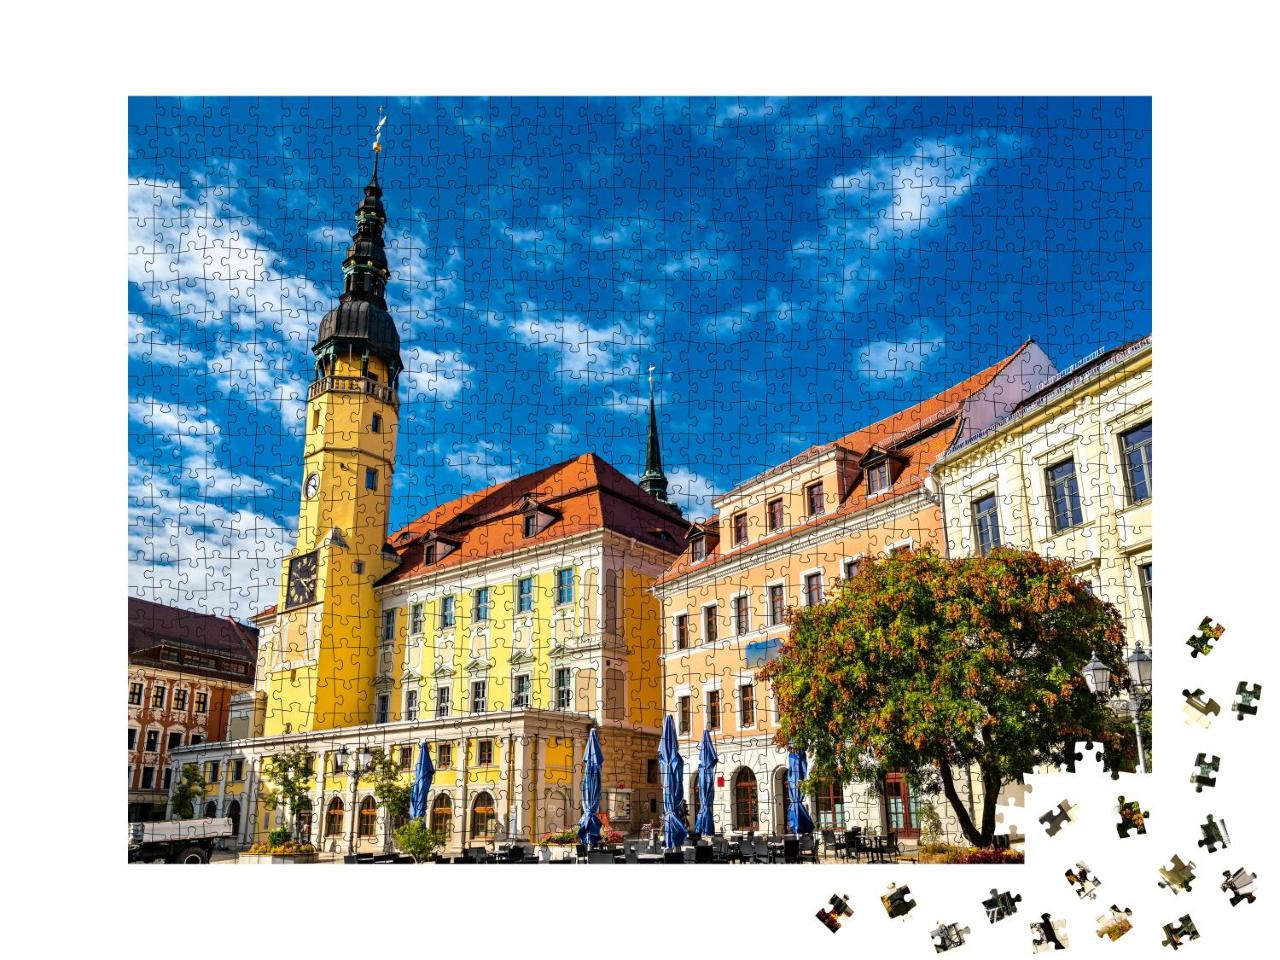 Puzzle 1000 Teile „Historisches Rathaus der Stadt Bautzen, Deutschland“